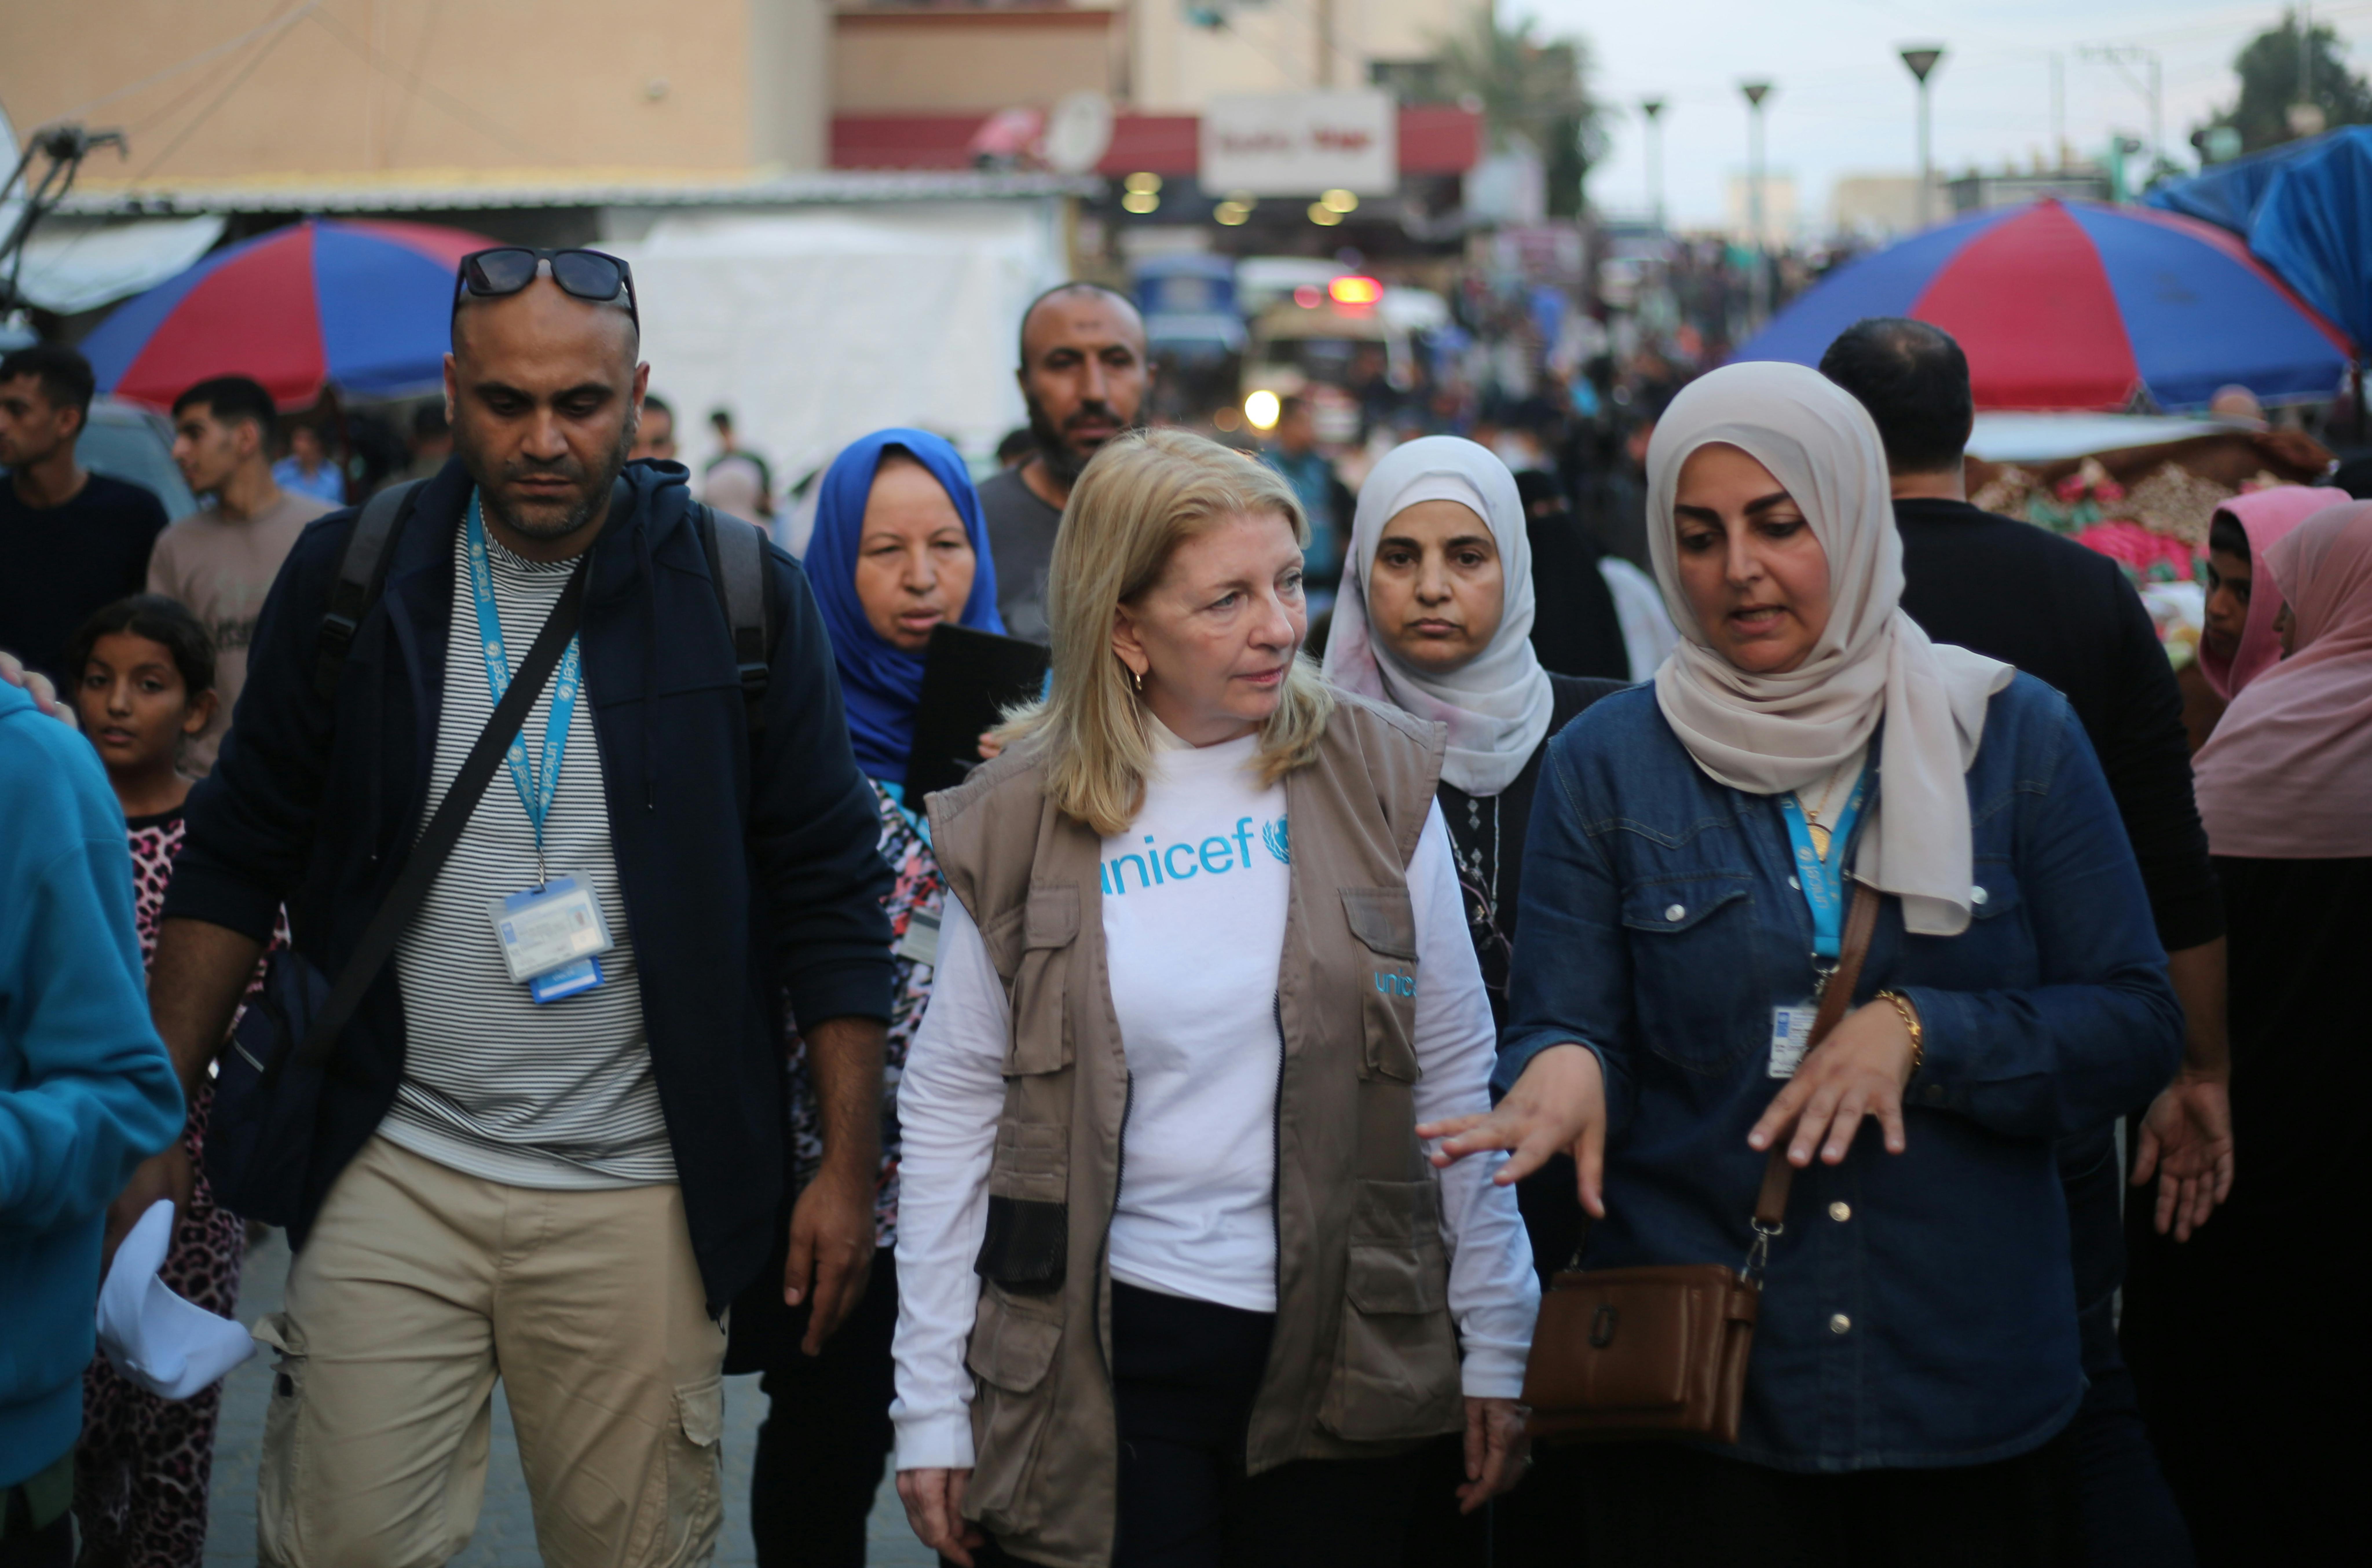 Catherine Russell, Direttore generale UNICEF sulla sua missione a Gaza:ù 